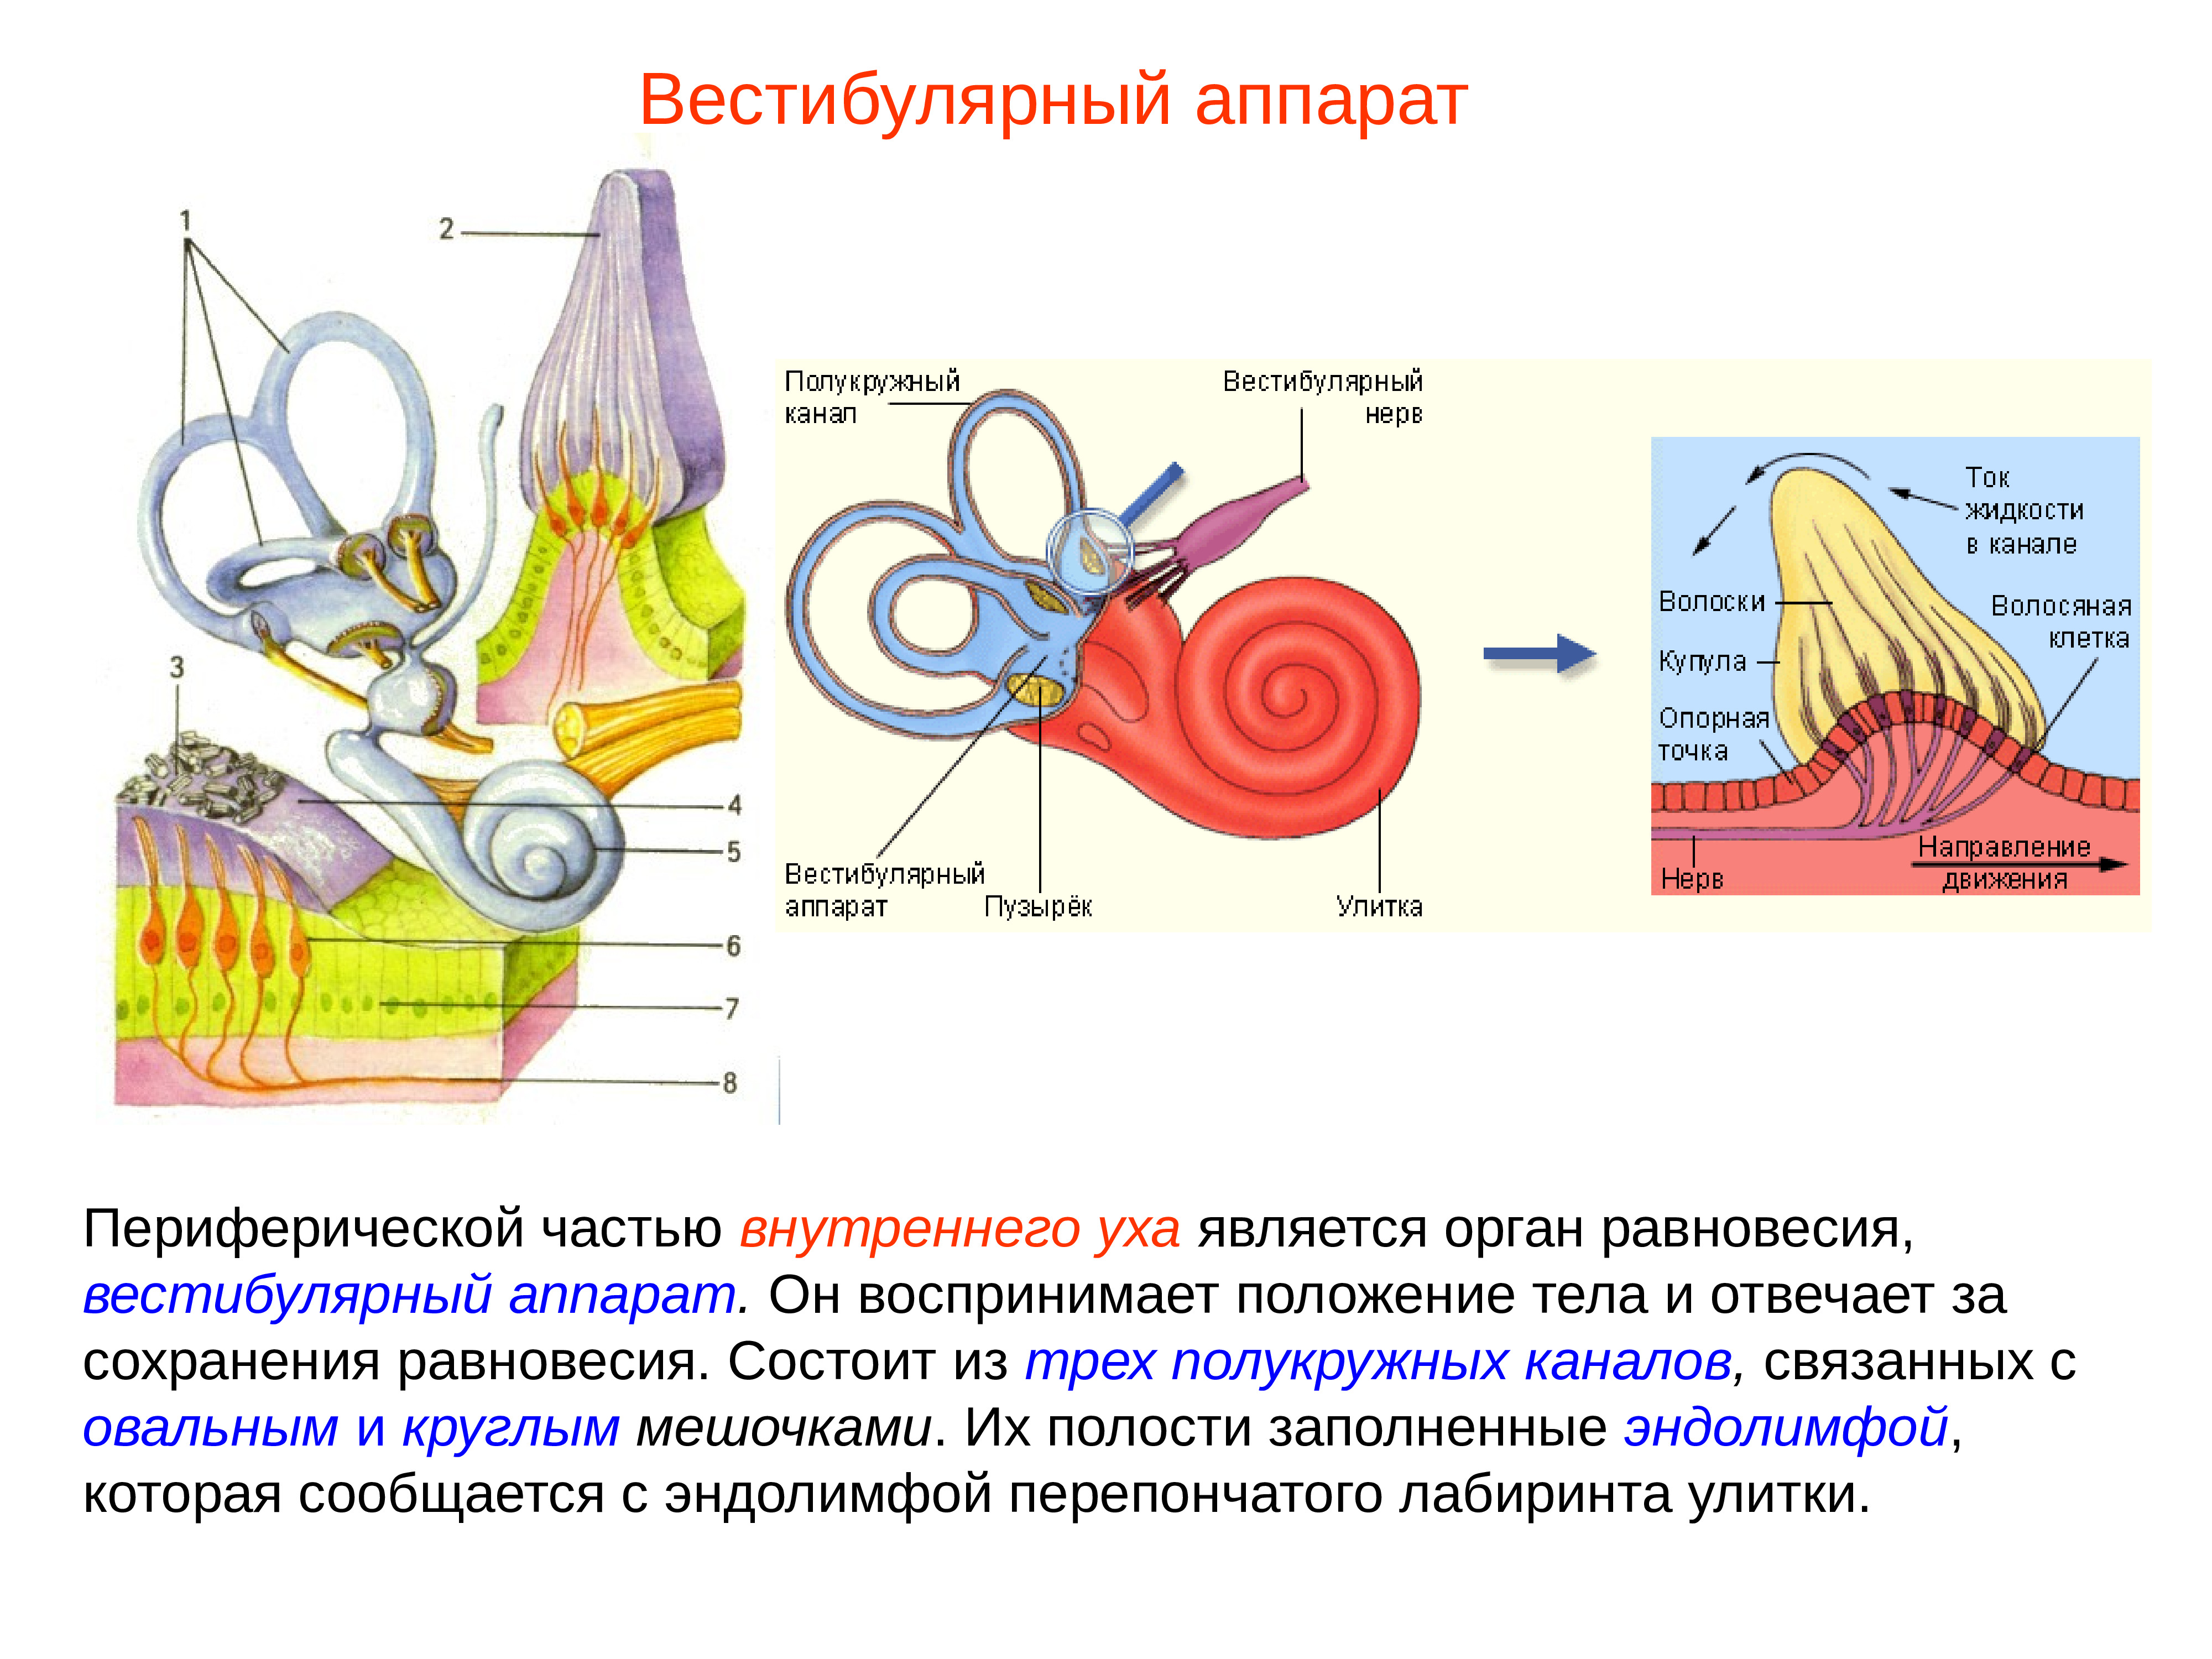 Внутреннее ухо является. Внутреннее ухо вестибулярный анализатор анатомия. Строение строение вестибулярного аппарата. Полукружные каналы внутреннего уха анатомия. Схема периферического отдела вестибулярного анализатора.